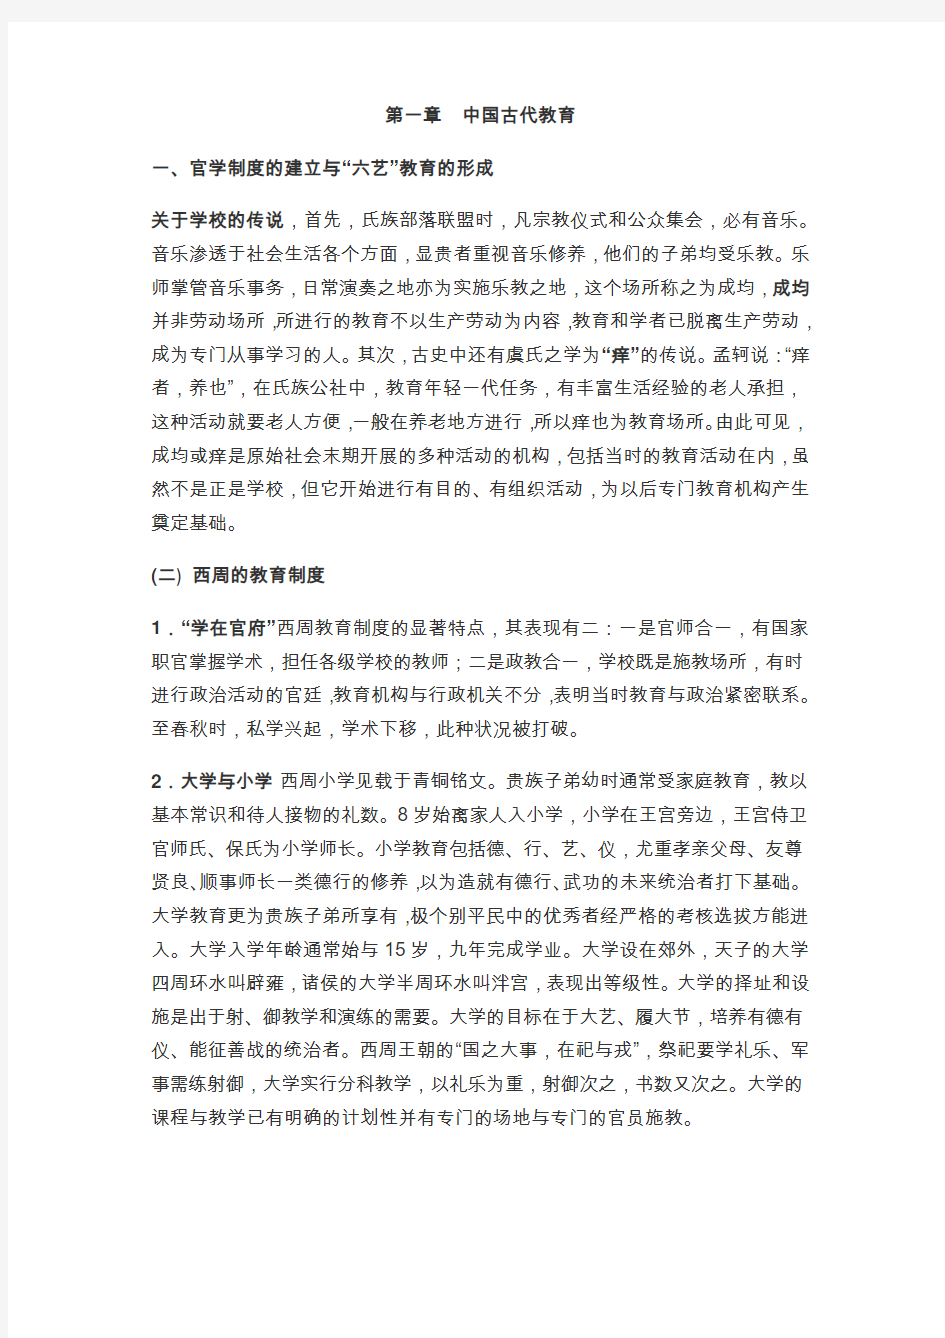 朱绍侯中国教育史电子笔记